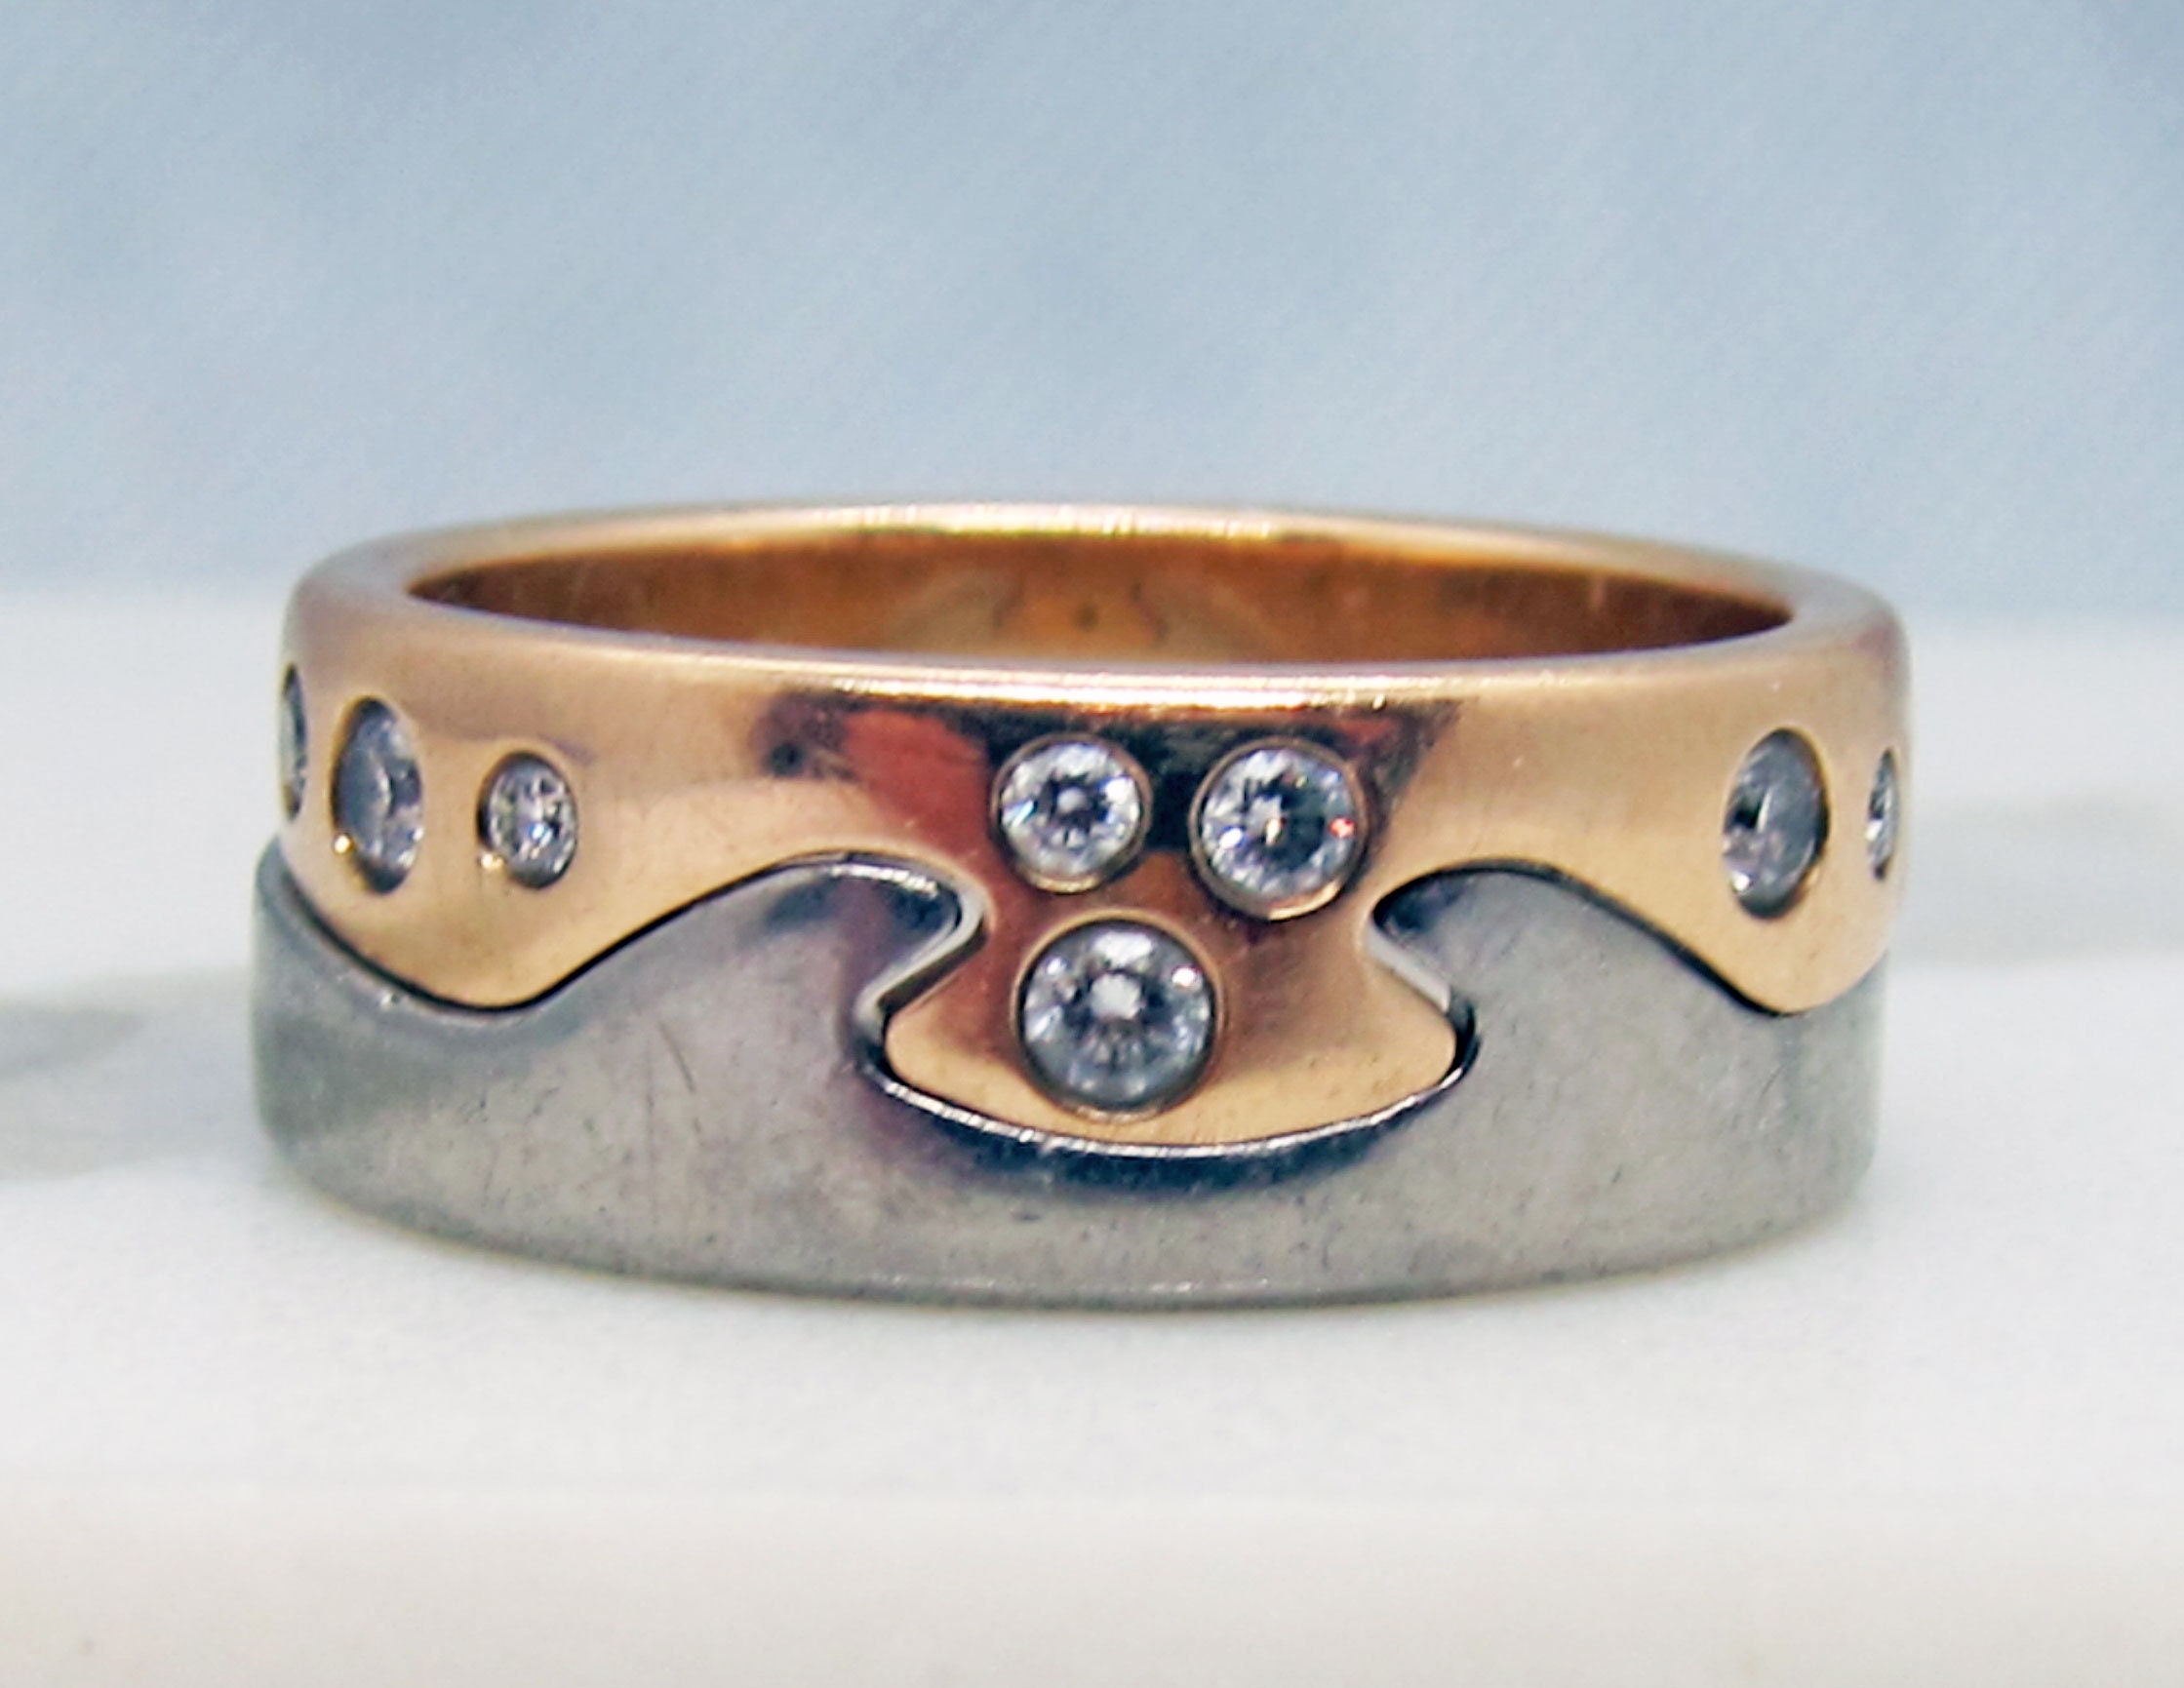 Interlocking Yin-Yang Diamond Puzzle Ring Set | HX Jewelry 18K Yellow Gold